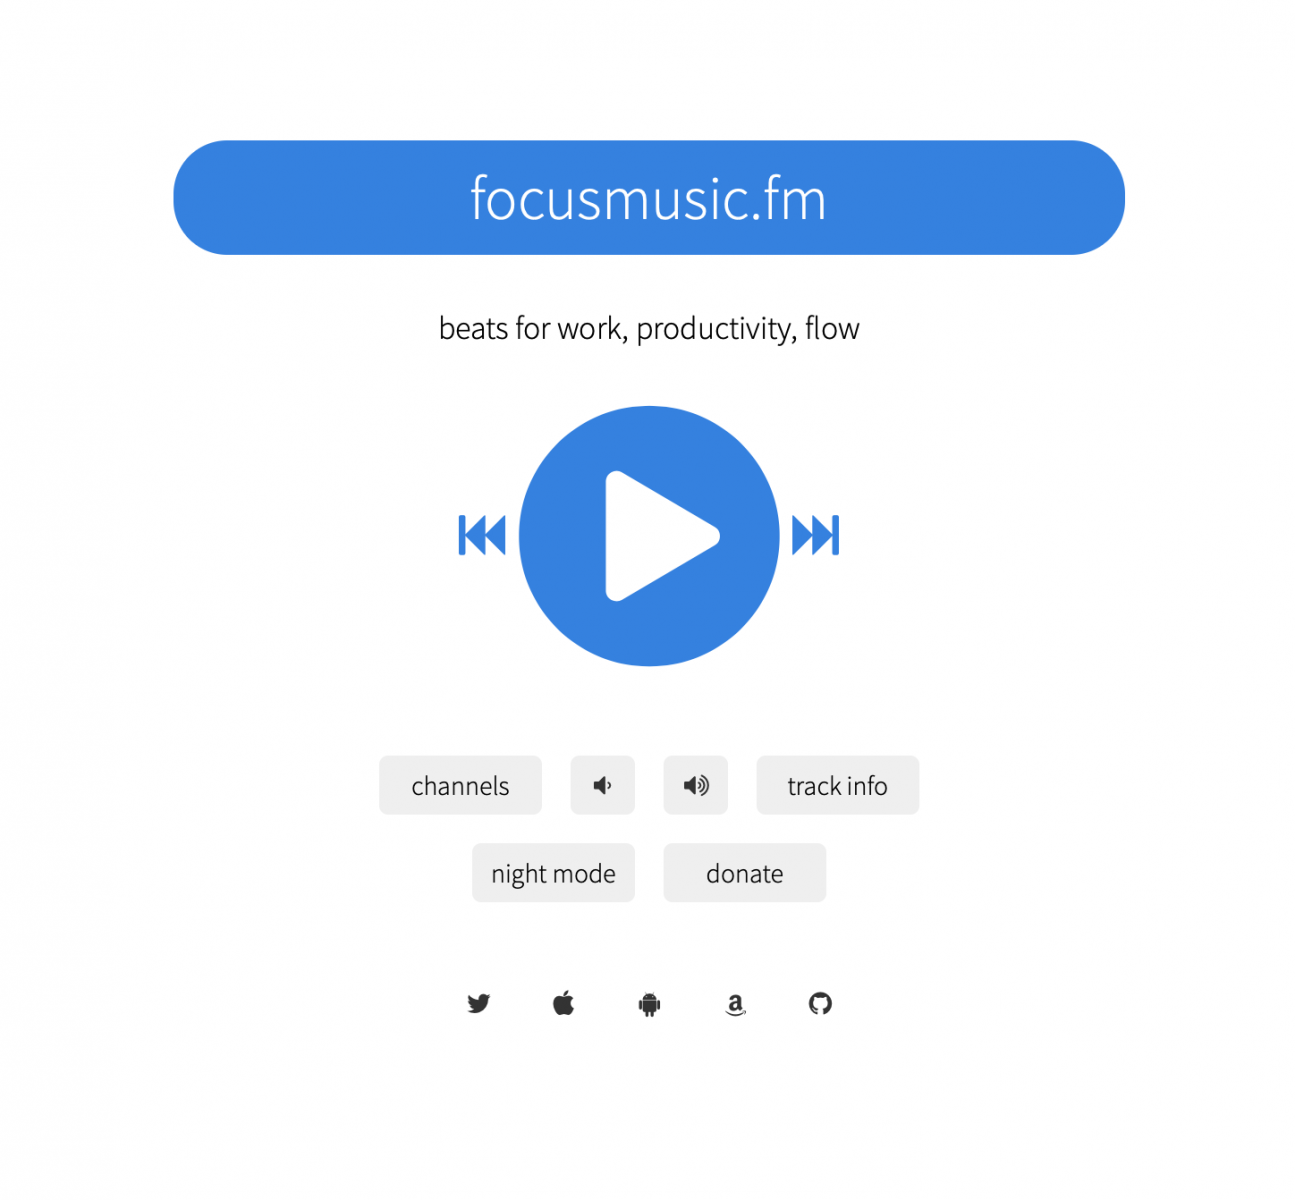 FocusMusic.fm 首頁